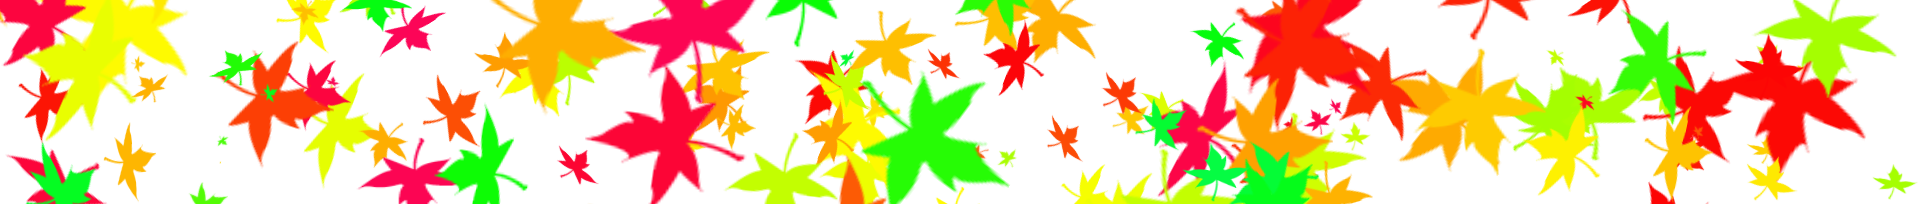 separador hojas de otoño.png